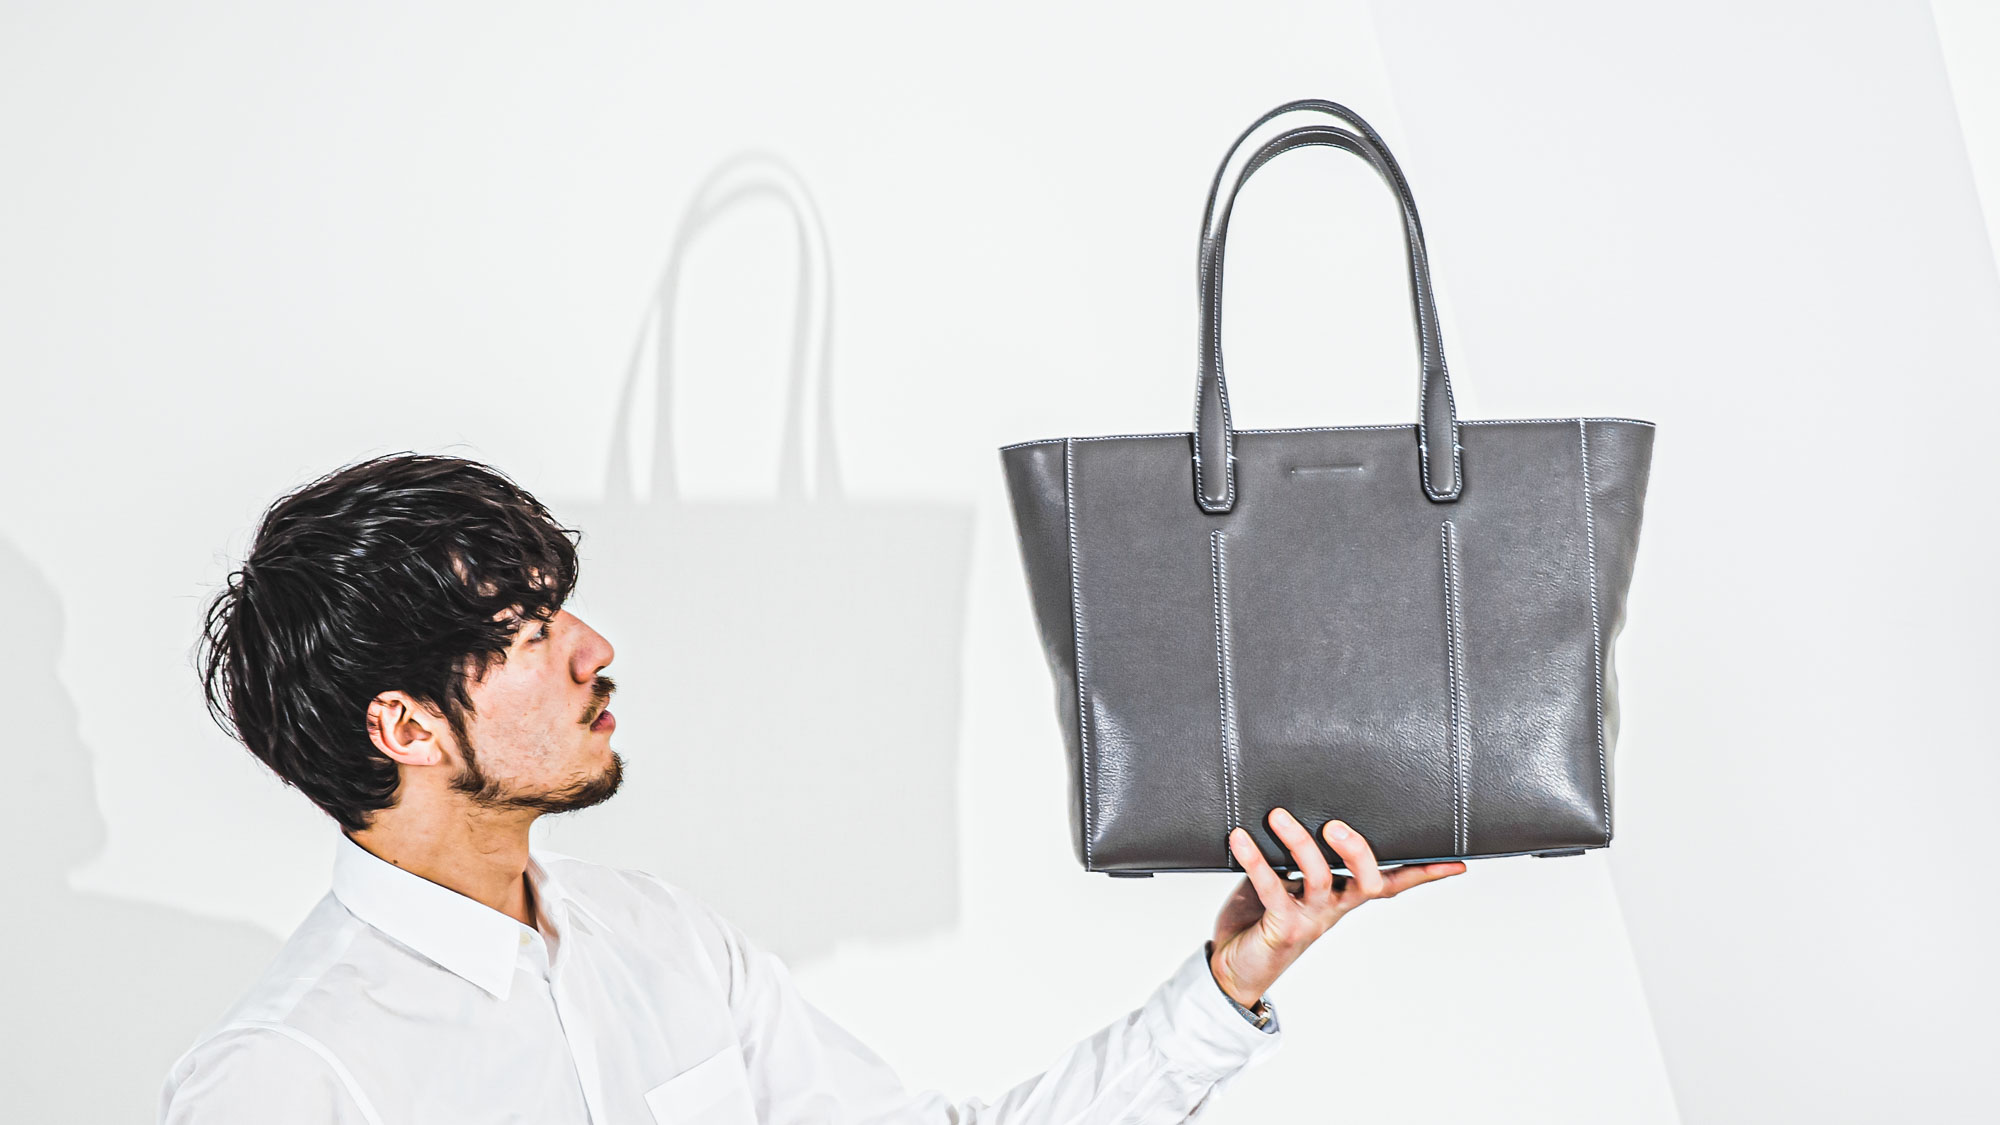 新生活のスタートを機能的で上品な佇まいのバッグとともに。objcts.ioが「Smart Tote」の新色「Gray」を3月24日(火)に発売